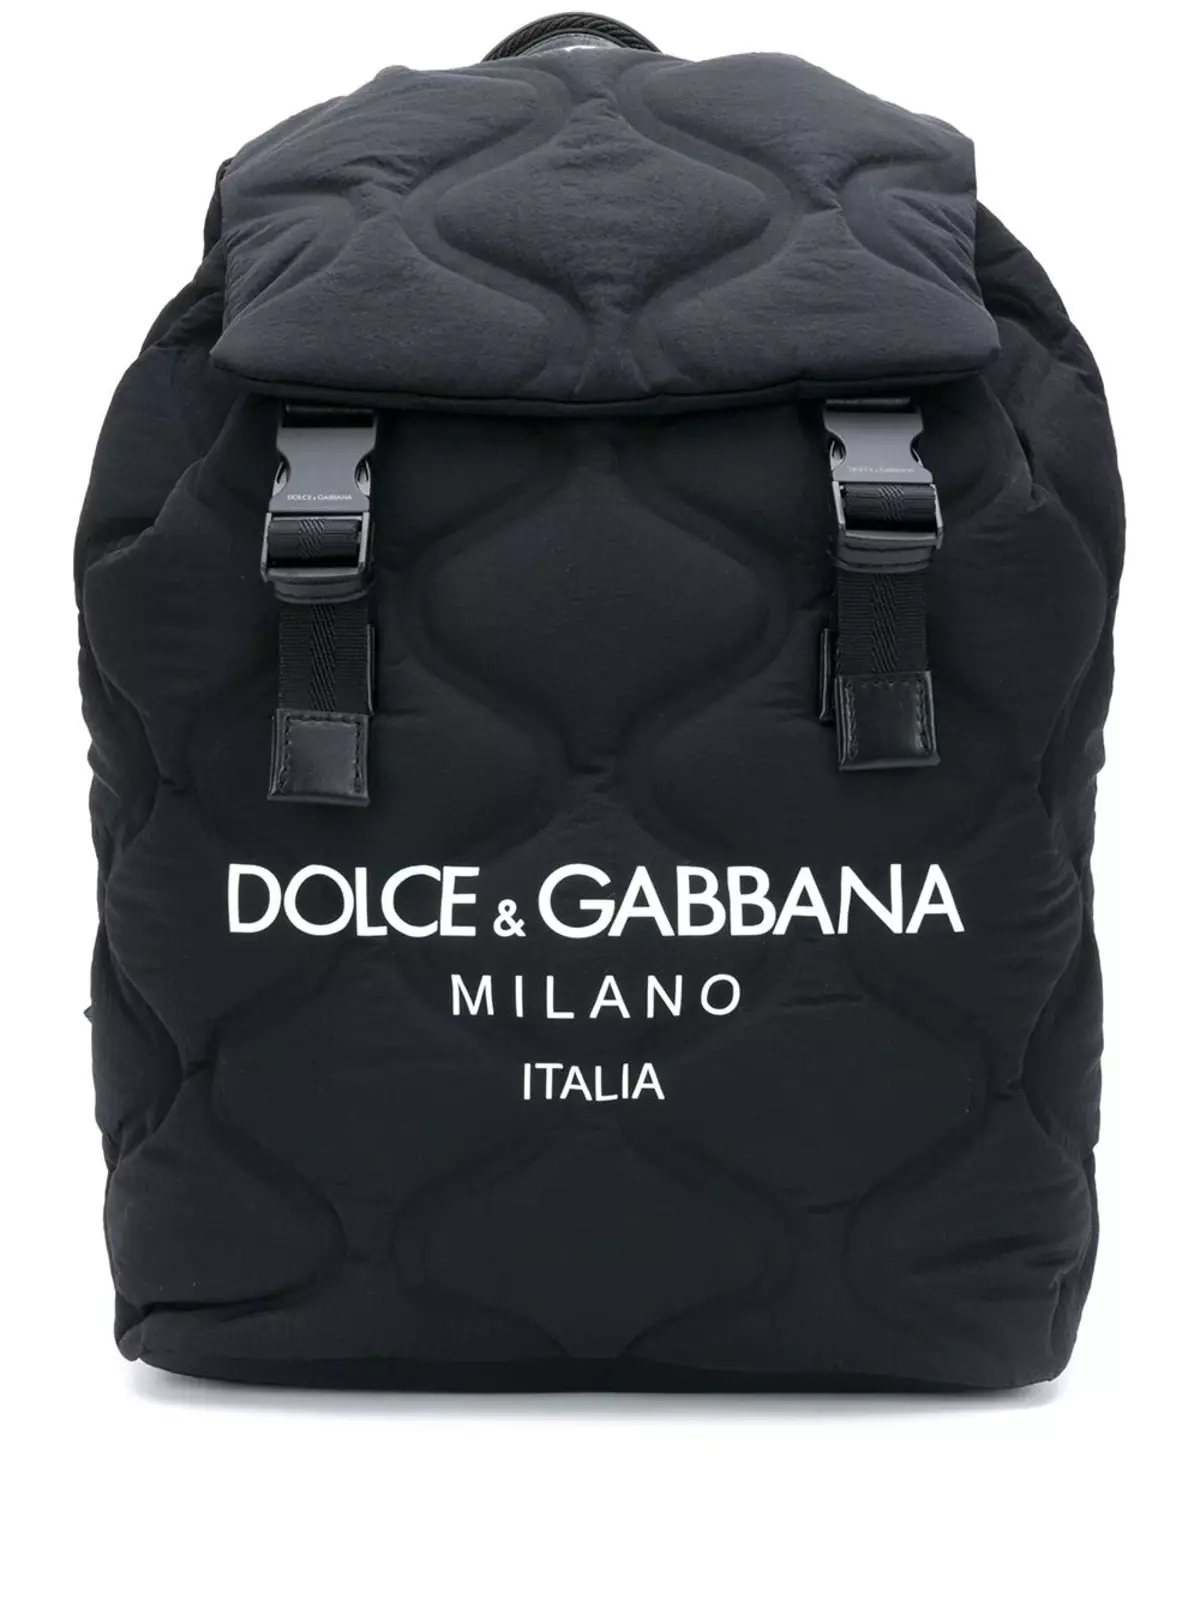 Dolce & Gabbana Plecaki: Kobiece i męskie, czarne i czerwone, skórzane plecaki torby i inne modele. Jak odróżnić oryginał z kopii? 2559_32